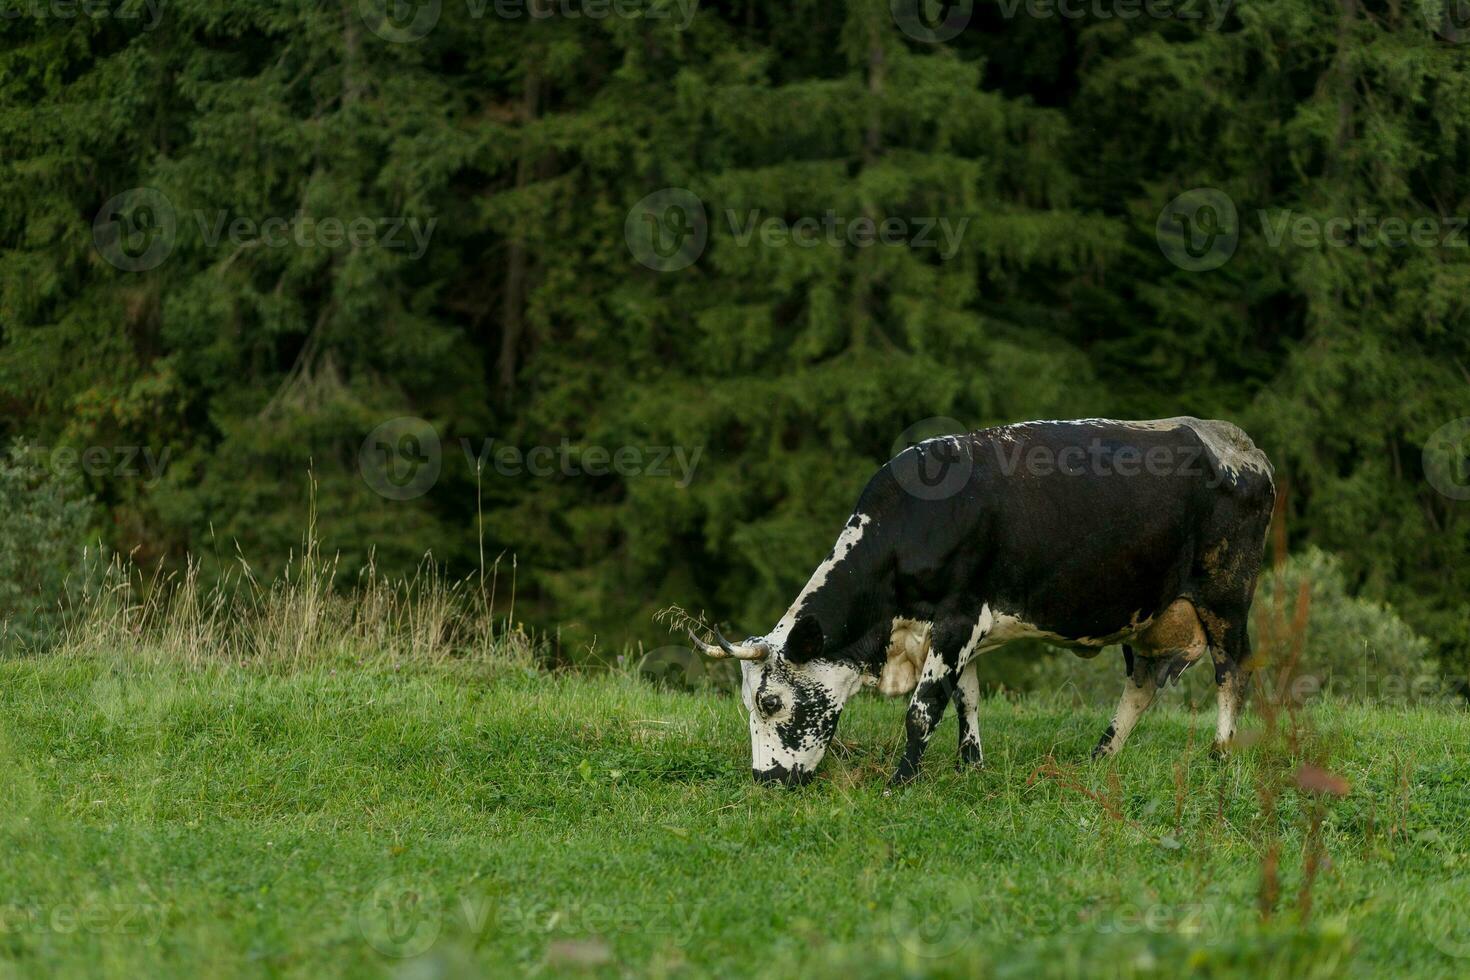 zwart en wit koe begrazing Aan weide in bergen. foto